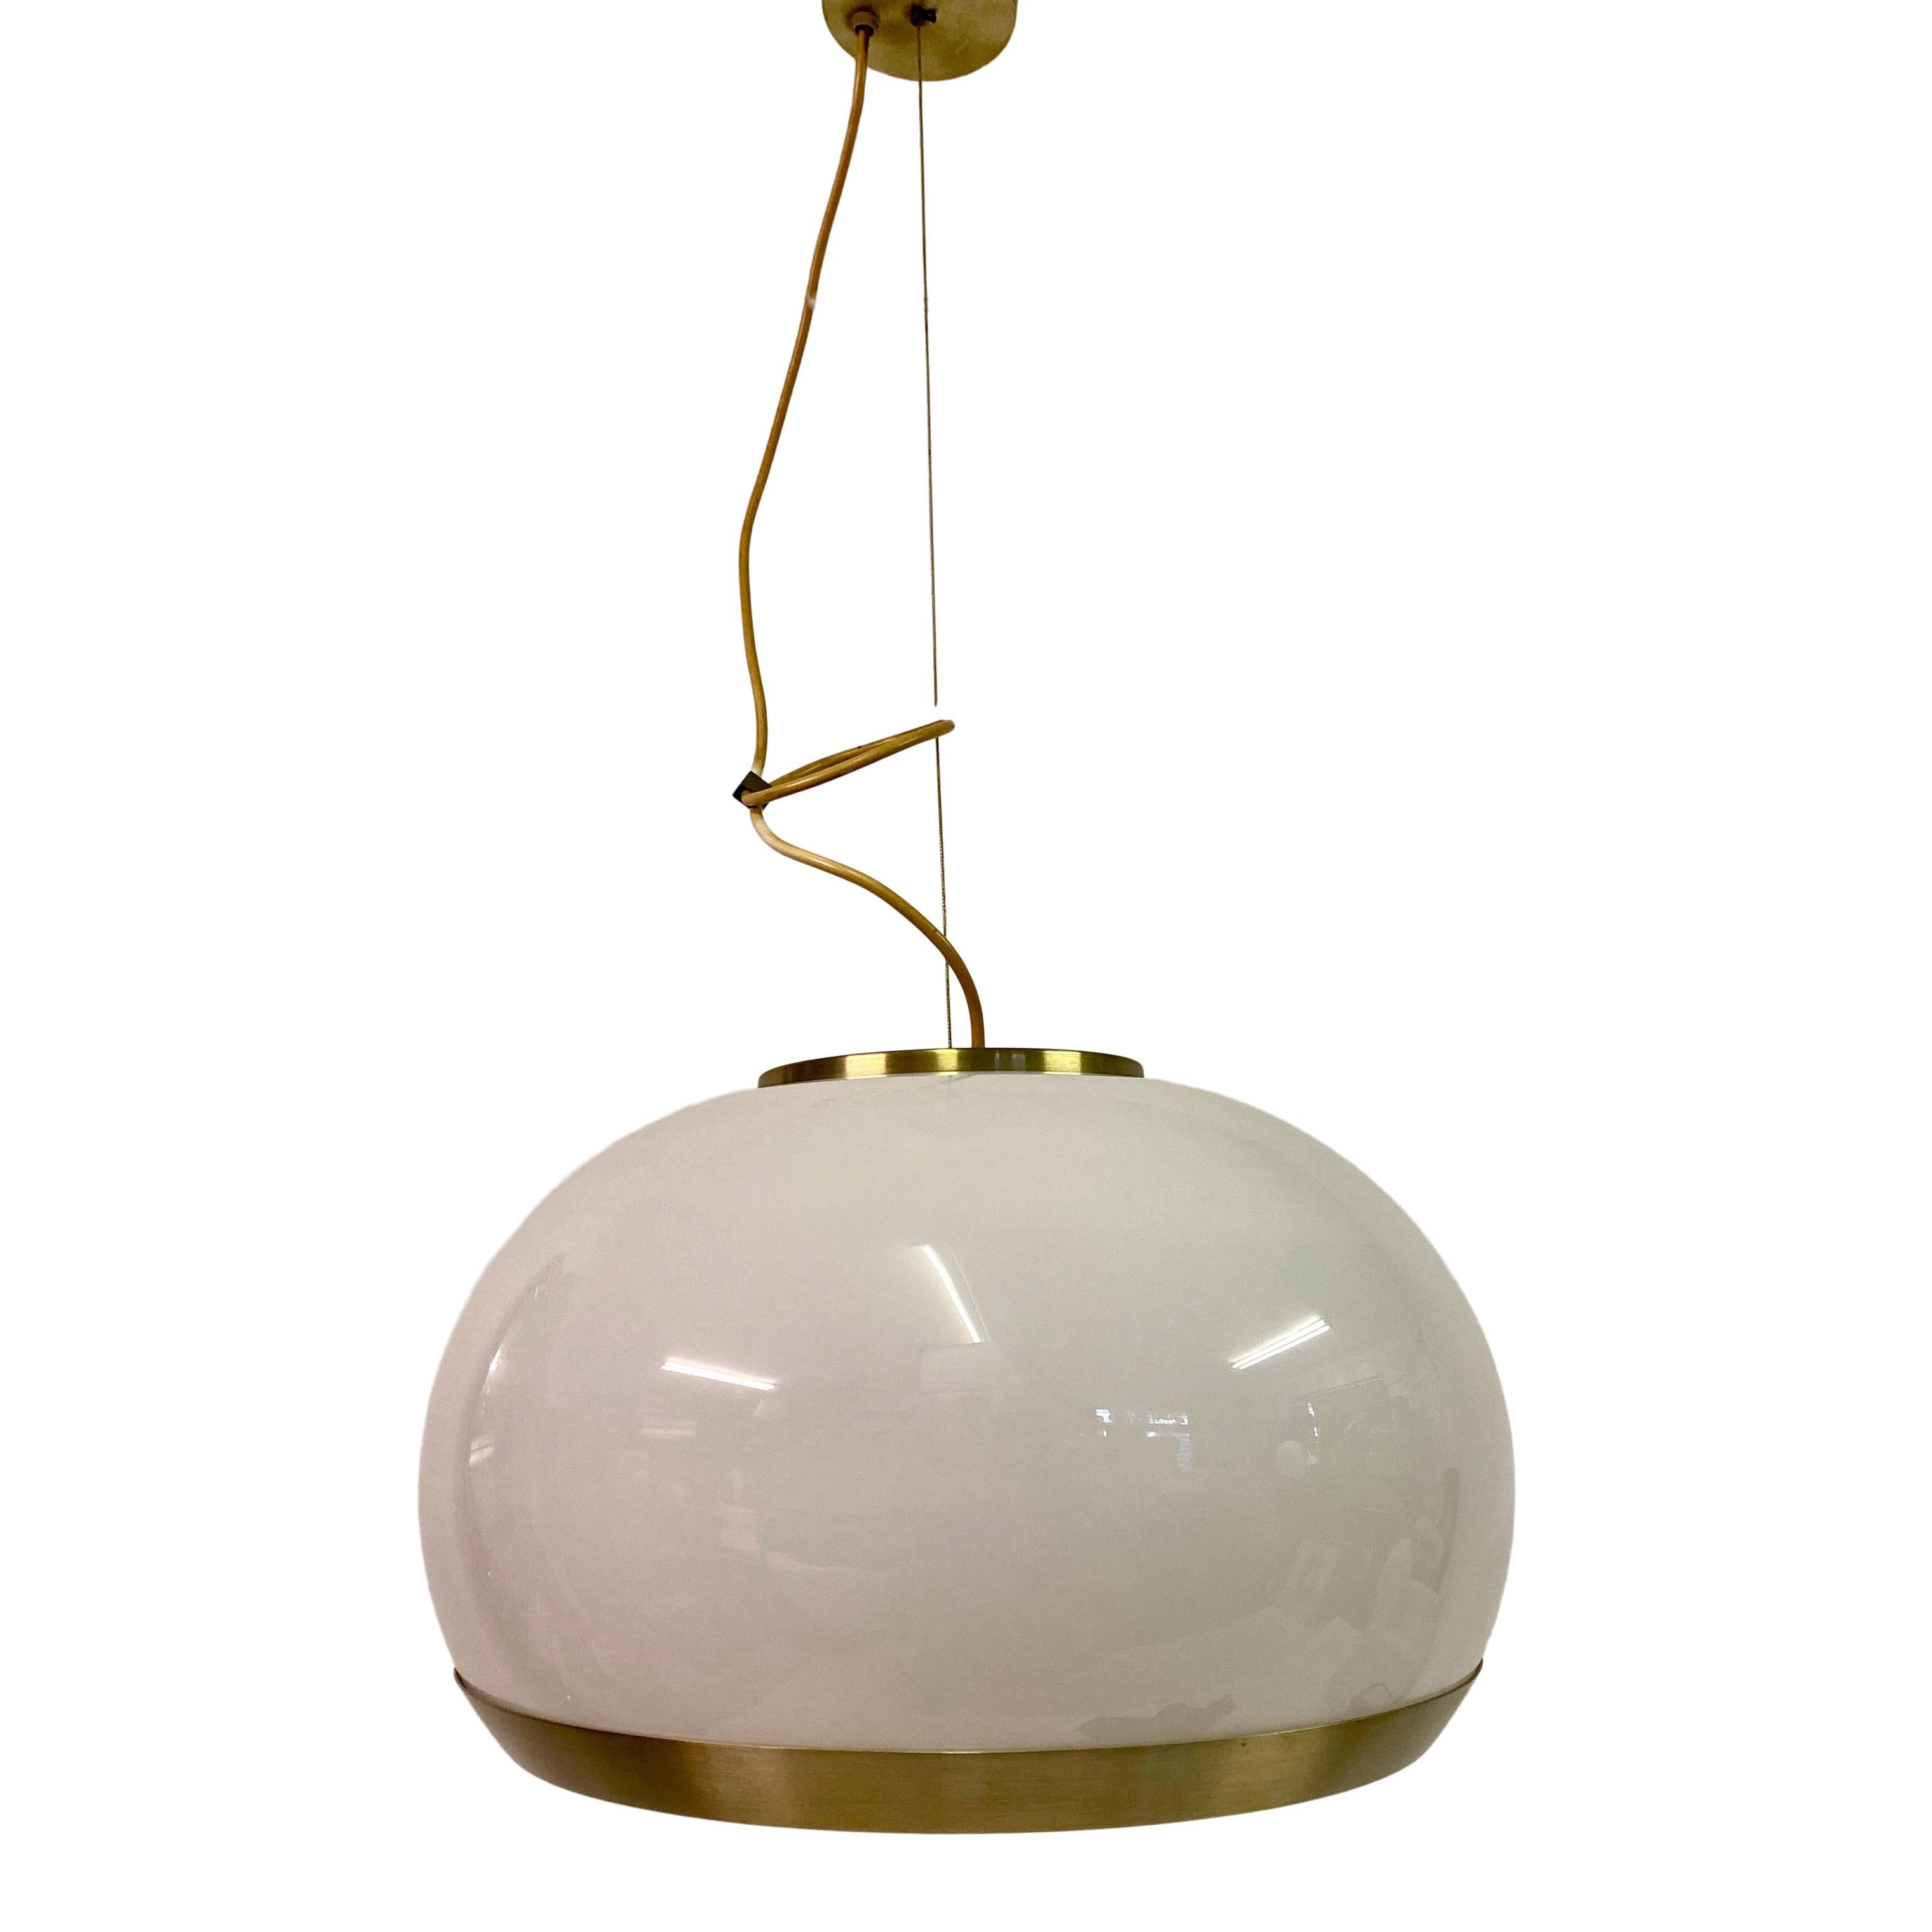 White glass pendant

Brushed brass bottom rim

Height adjustable

Brass fittings

Italian 1960s.